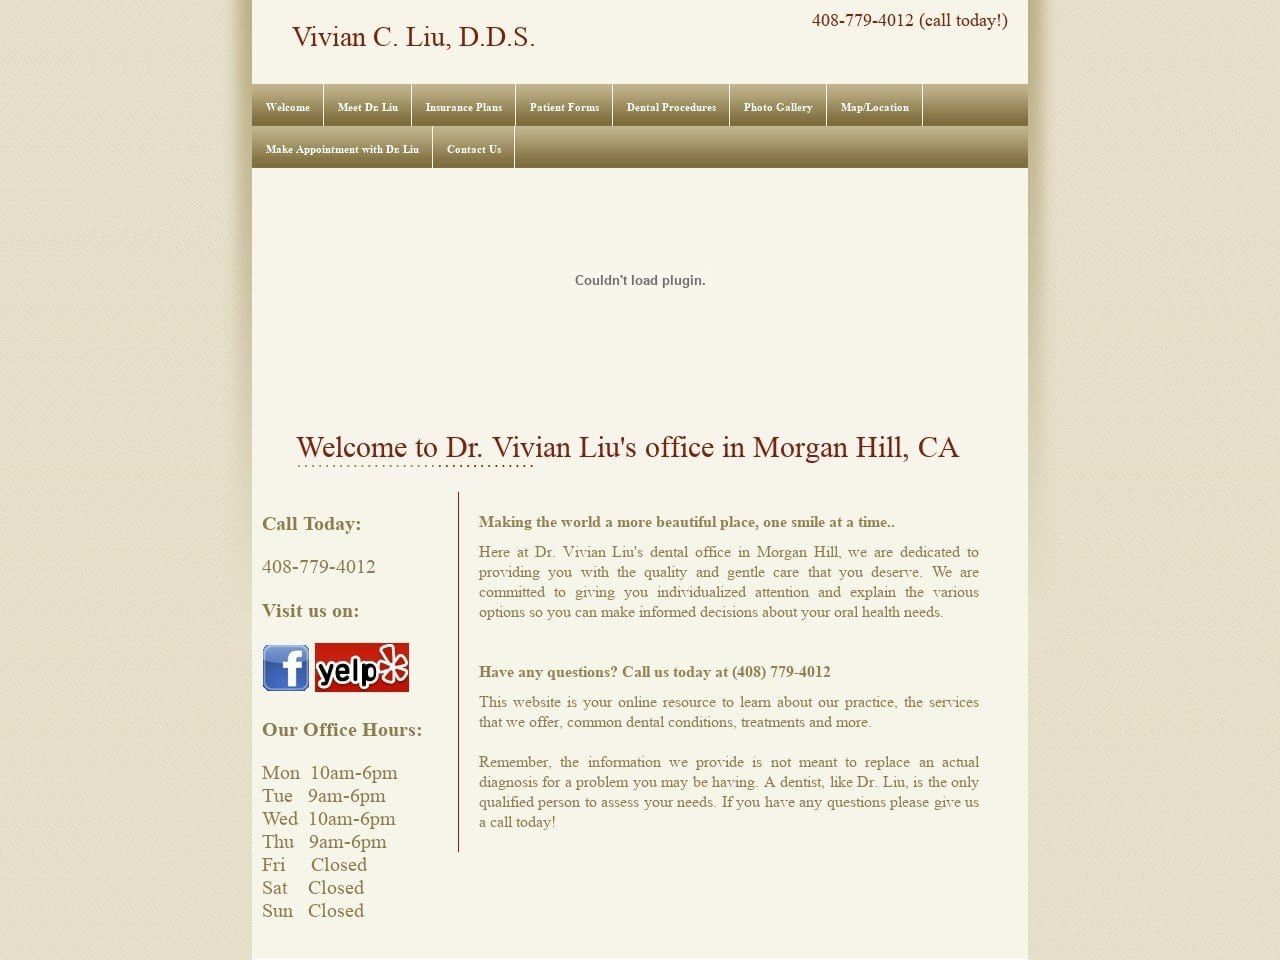 Liu Vivian C DDS Website Screenshot from liudentalmorganhill.com